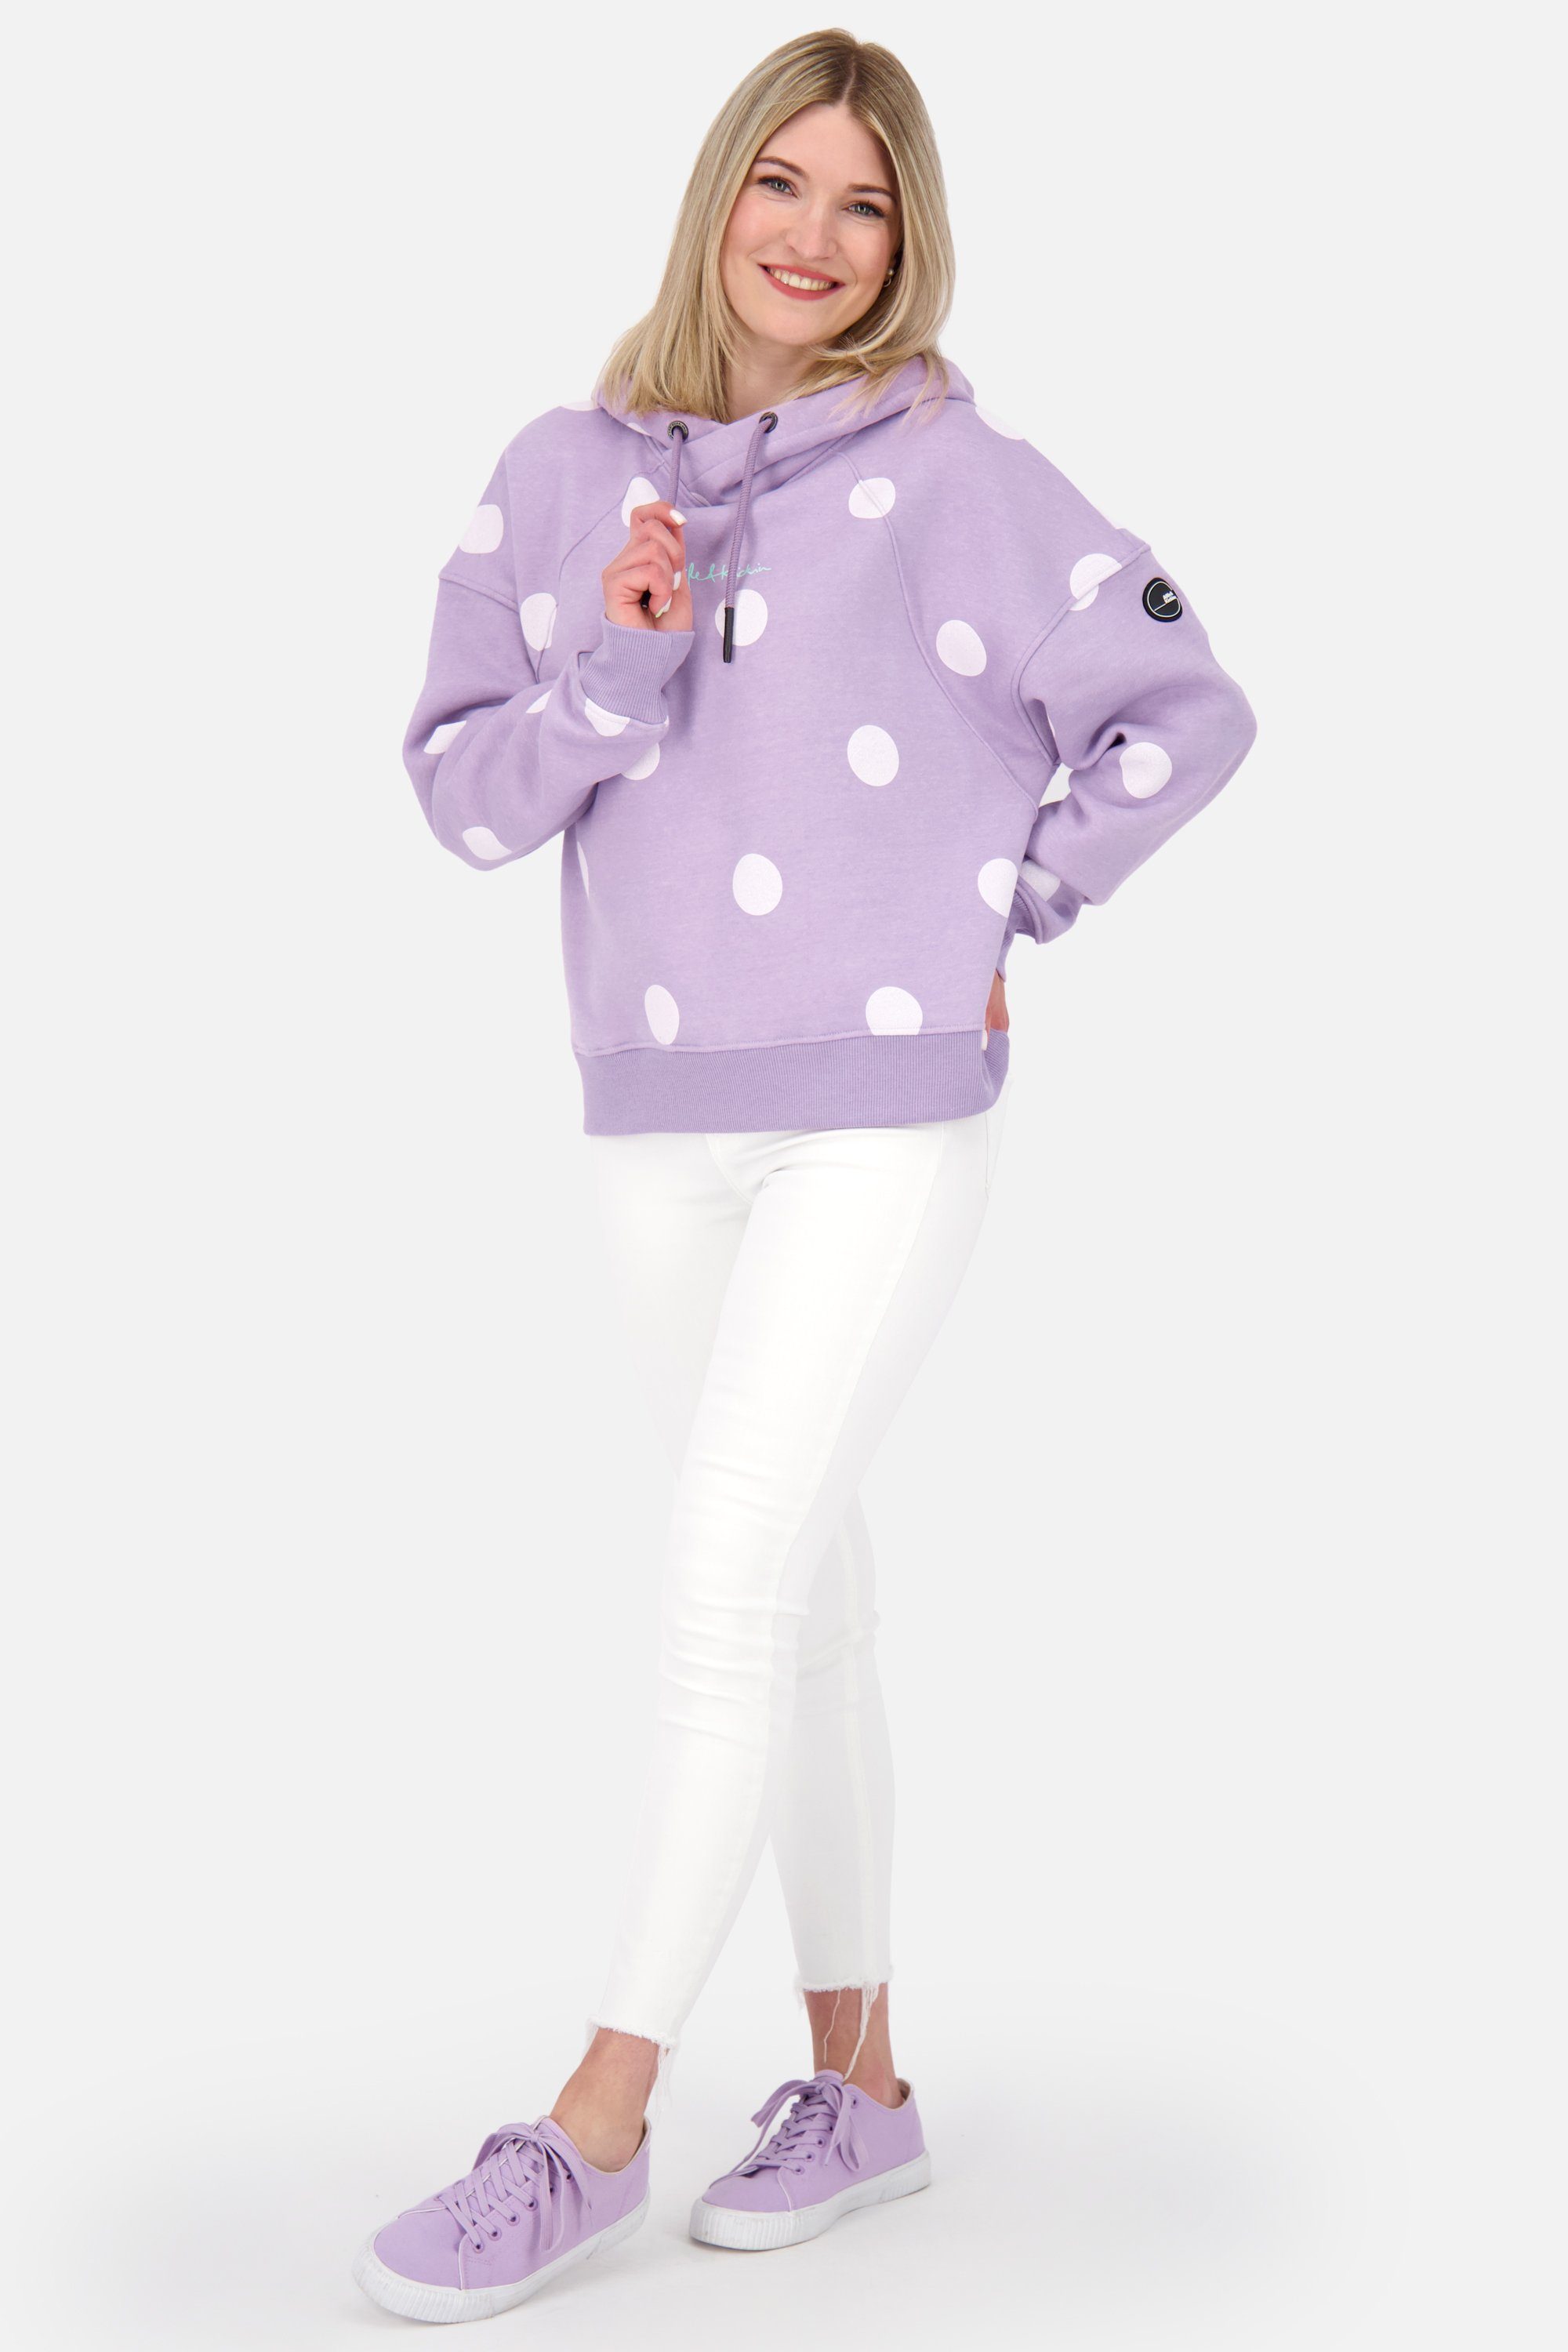 Hoodie Damen melange Kickin & lavender Kapuzensweatshirt digital Alife Kapuzensweatshirt, JessyAK Sweatshirt Pullover B